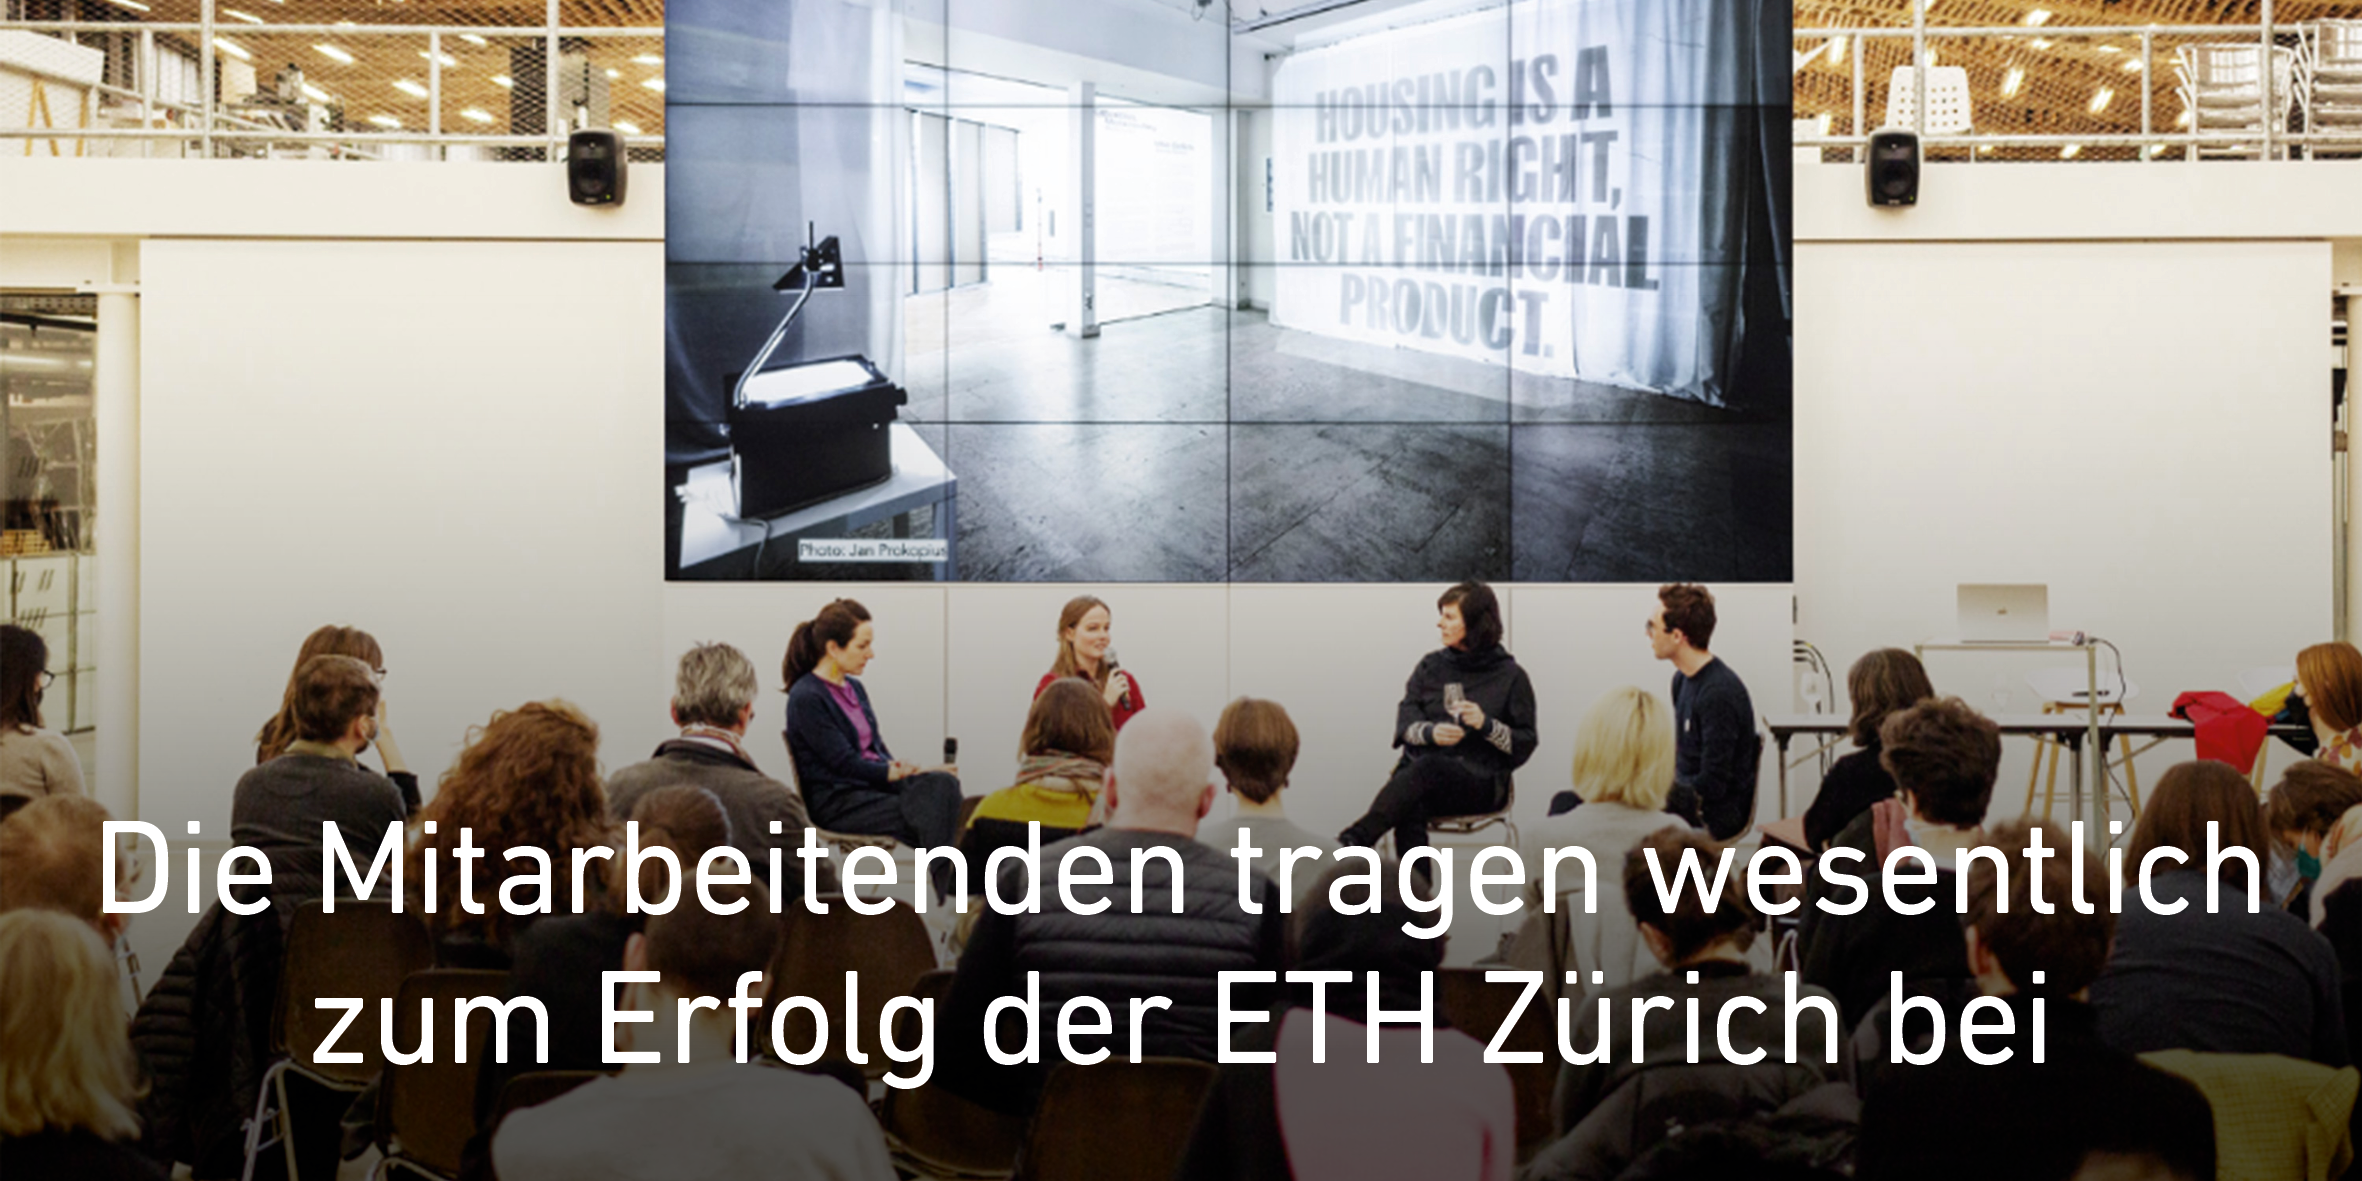 Diskussionspanel mit mehreren Teilnehmenden. Text: Die Mitarbeitenden tragen wesentlich zum Erfolg der ETH Zürich bei. Link zu News Artikel.